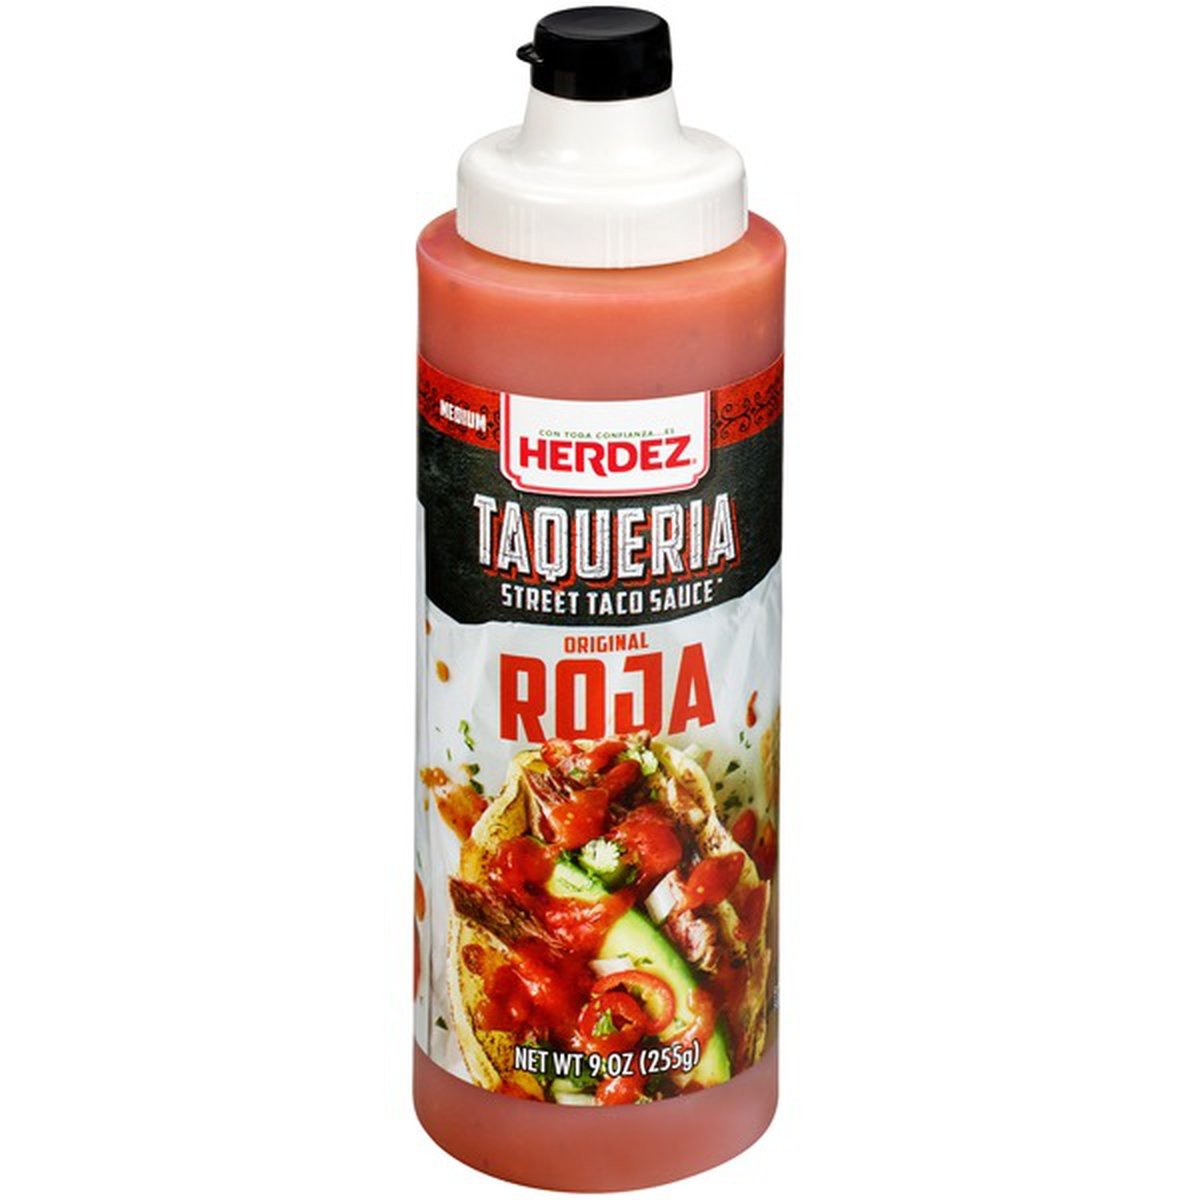 slide 1 of 1, Herdez Medium Original Roja Taqueria Street Taco Sauce, 9 oz